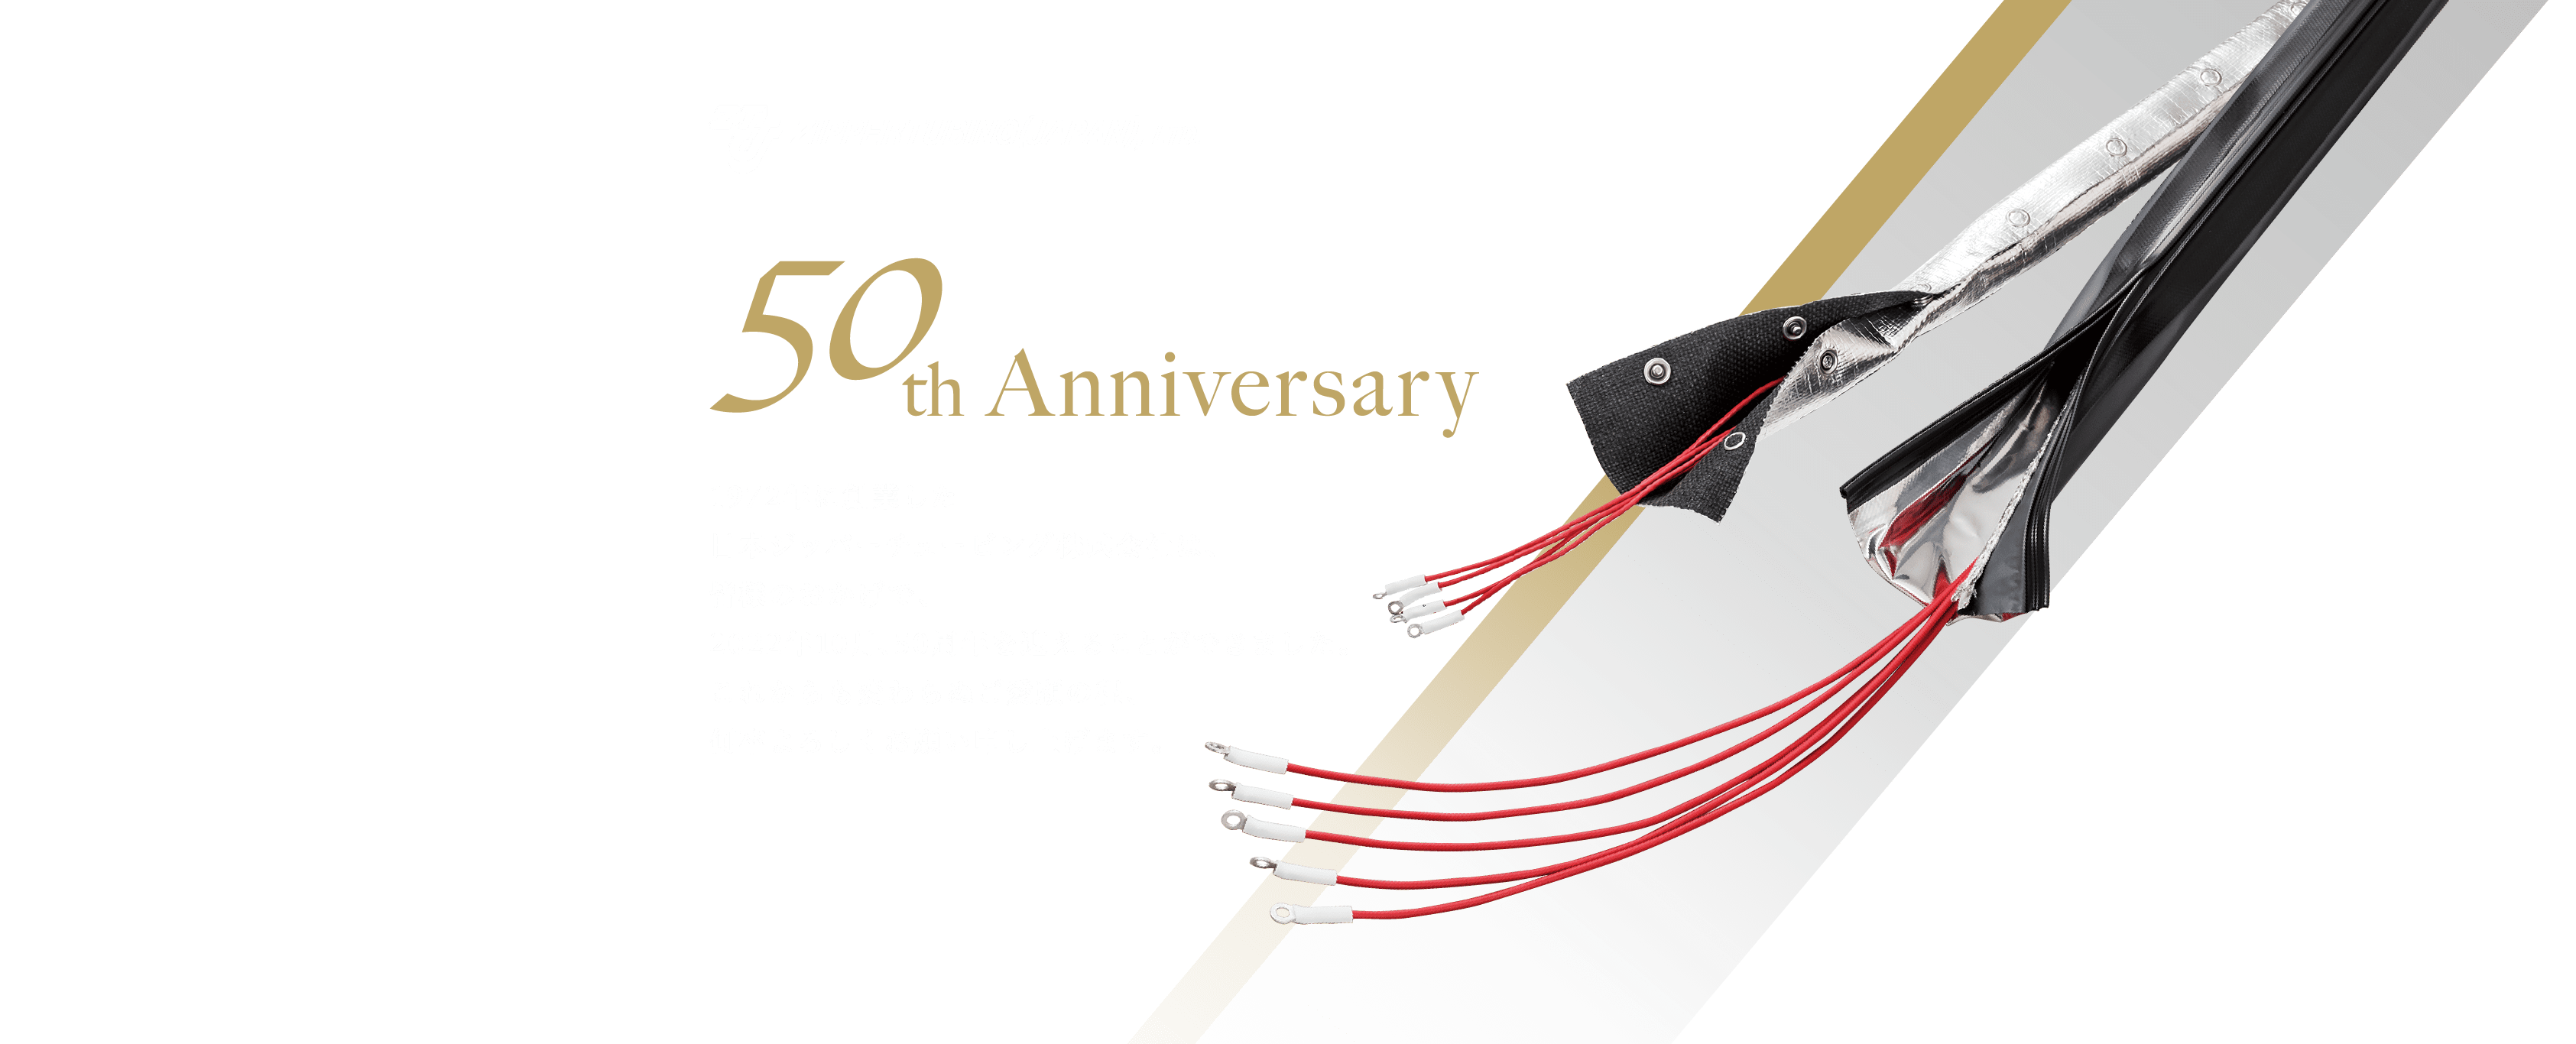 50th Anniversary。1972年に創業した日本ジッパーチュービング株式会社は、皆様のおかげで、2022年10月、50周年を迎えることができました。これからも変わらぬご愛顧の程、何卒よろしくお願い申し上げます。